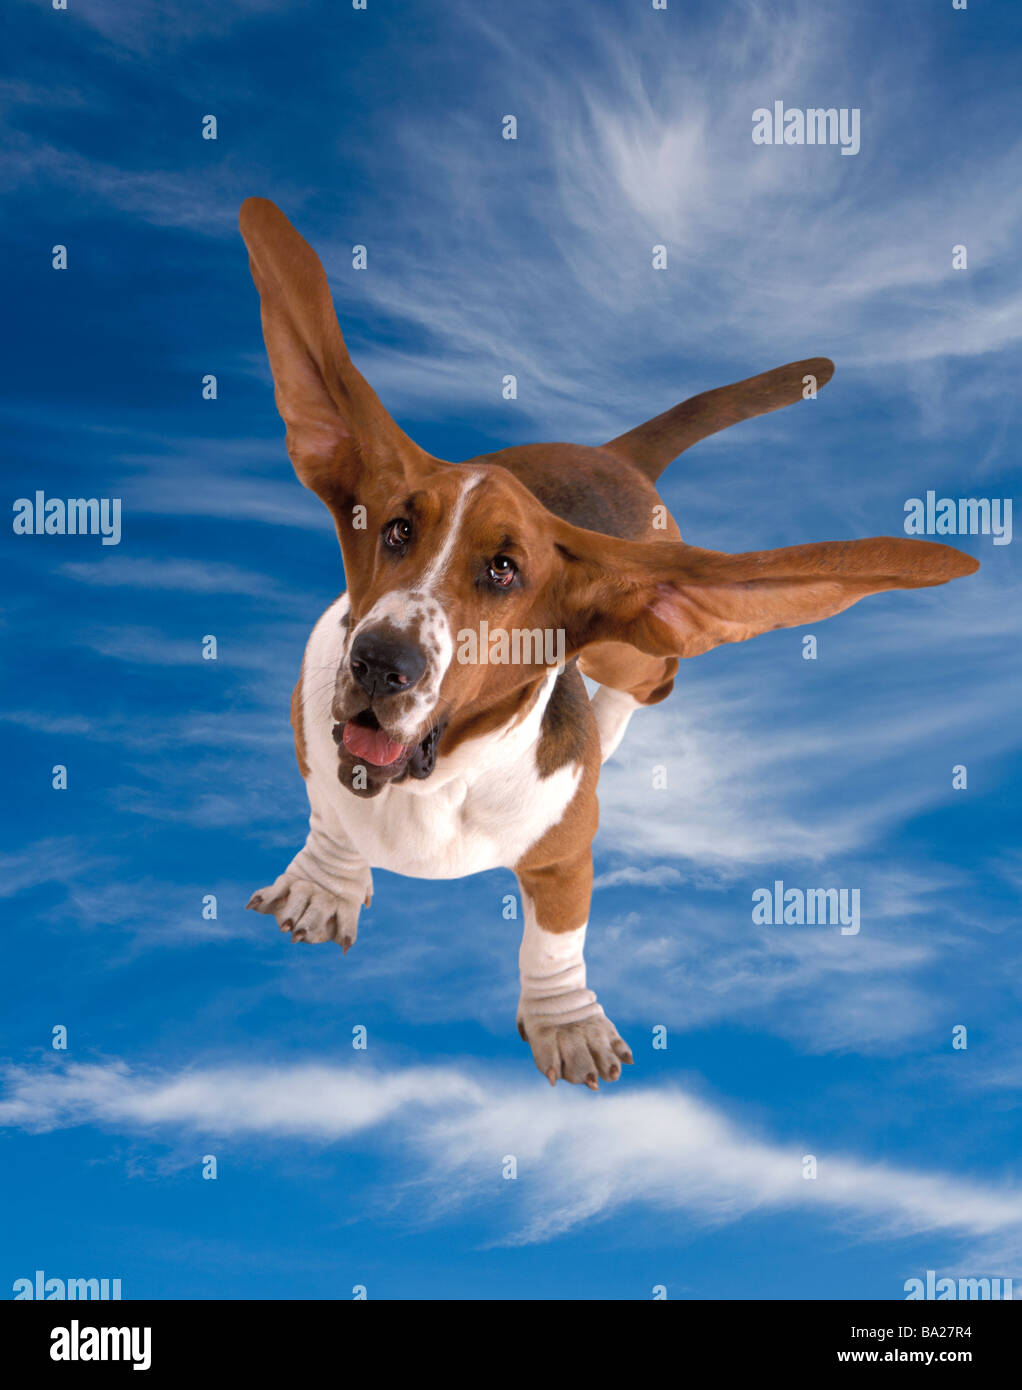 Cane che vola immagini e fotografie stock ad alta risoluzione - Alamy